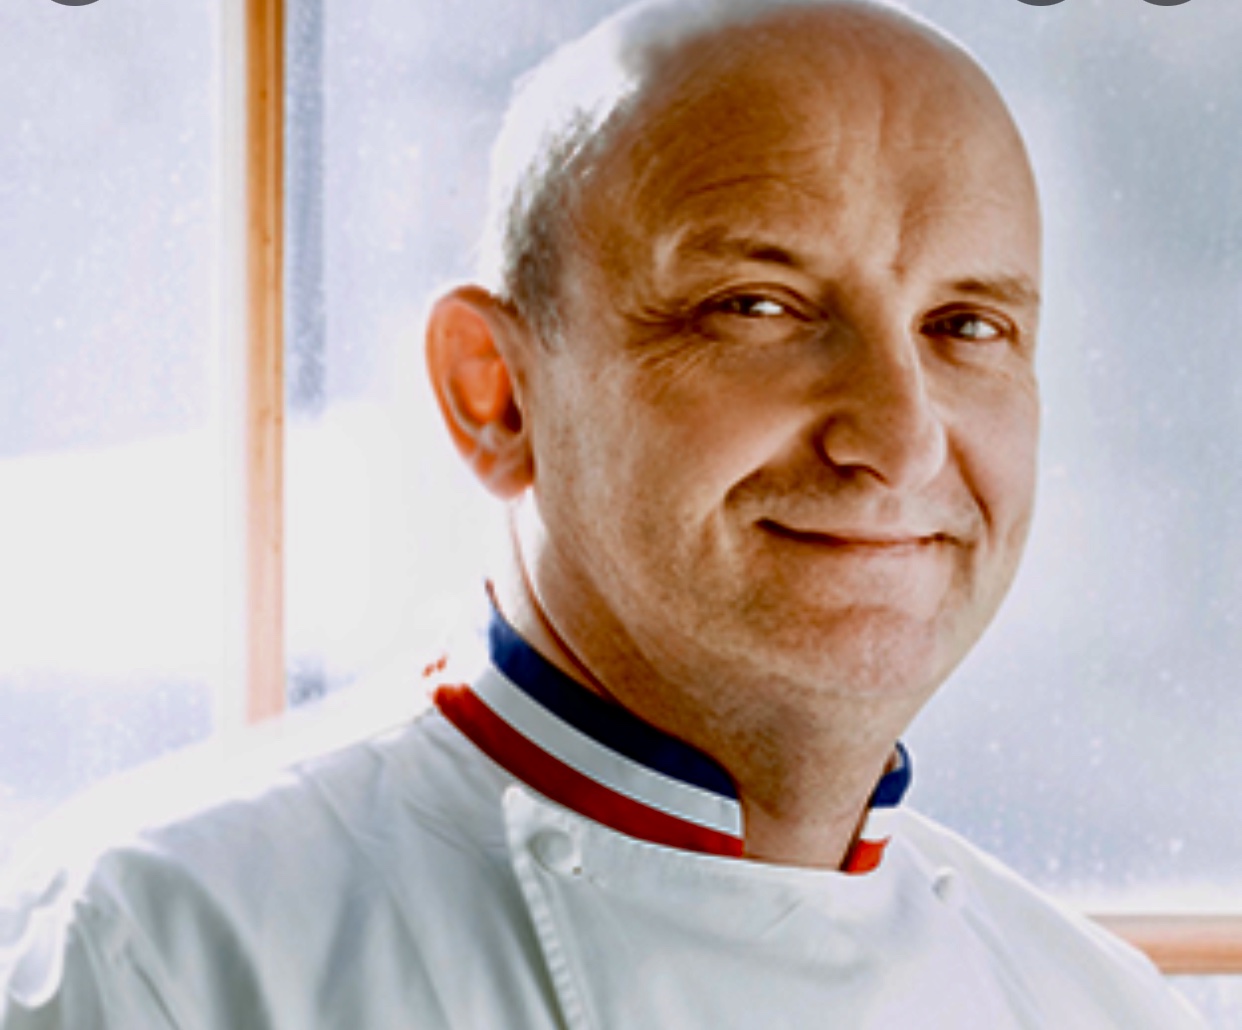 Christian Faure, un homme en uniforme de cuisinier, sourit devant une fenêtre.